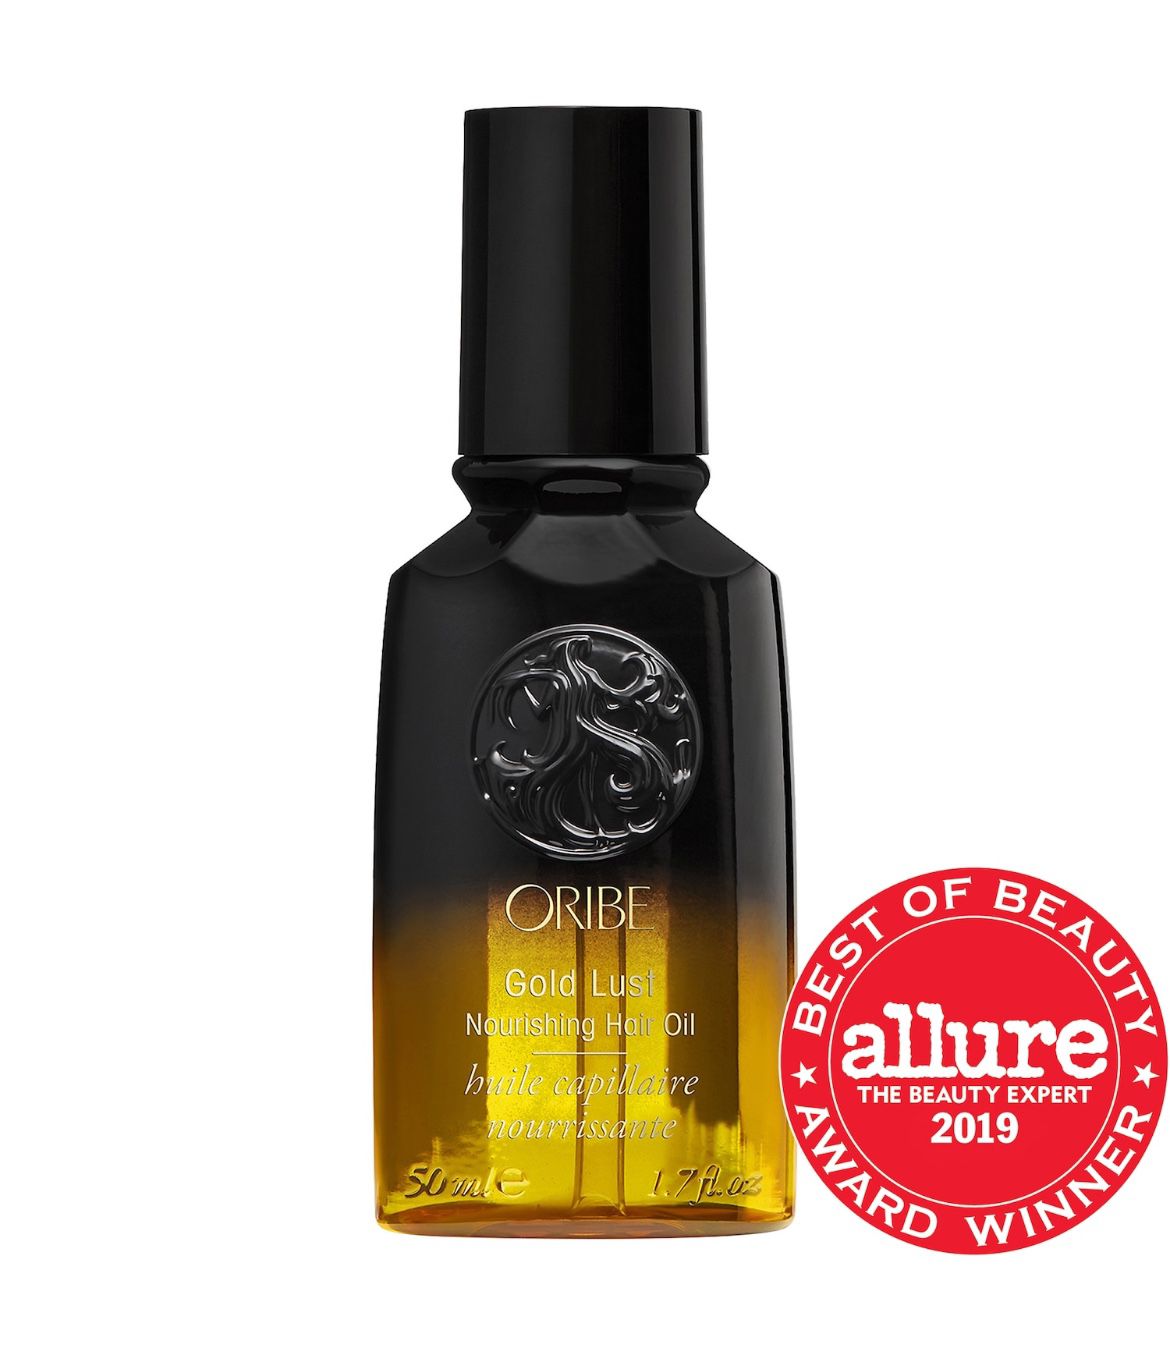 Oribe Gold List Nourishing Hair Oil